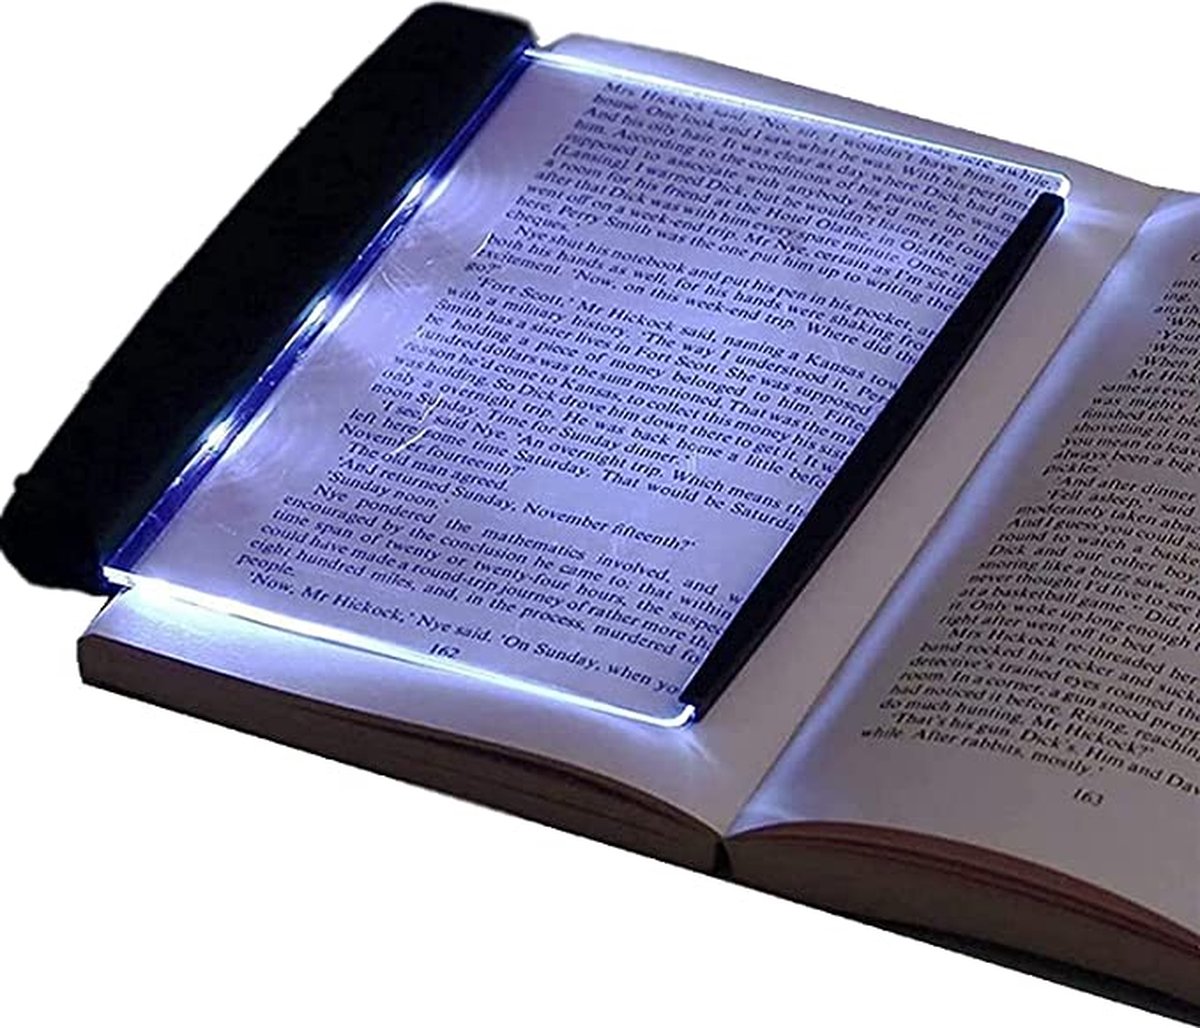 Draagbare Bladwijzer-Licht Boek- Licht LED- Lezen Helder- Licht Lamp- Studeer Licht- Leeslamp- Voor Lezen In Bed- Boek